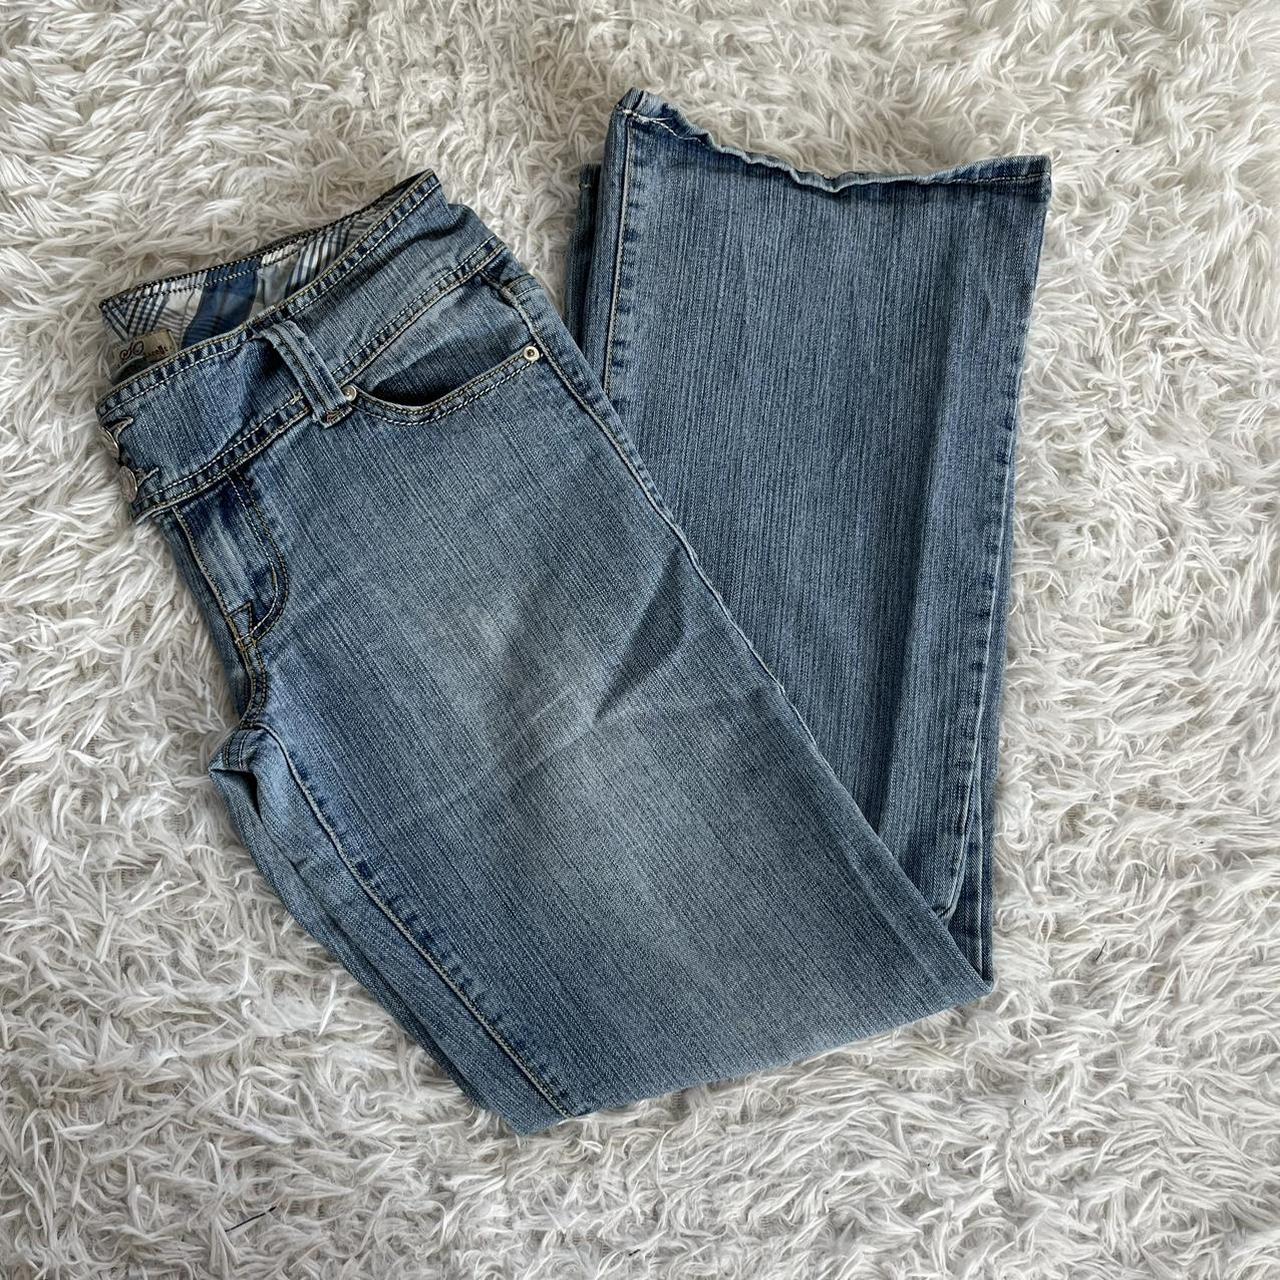 So Wear It Declare It Women's Blue Jeans | Depop